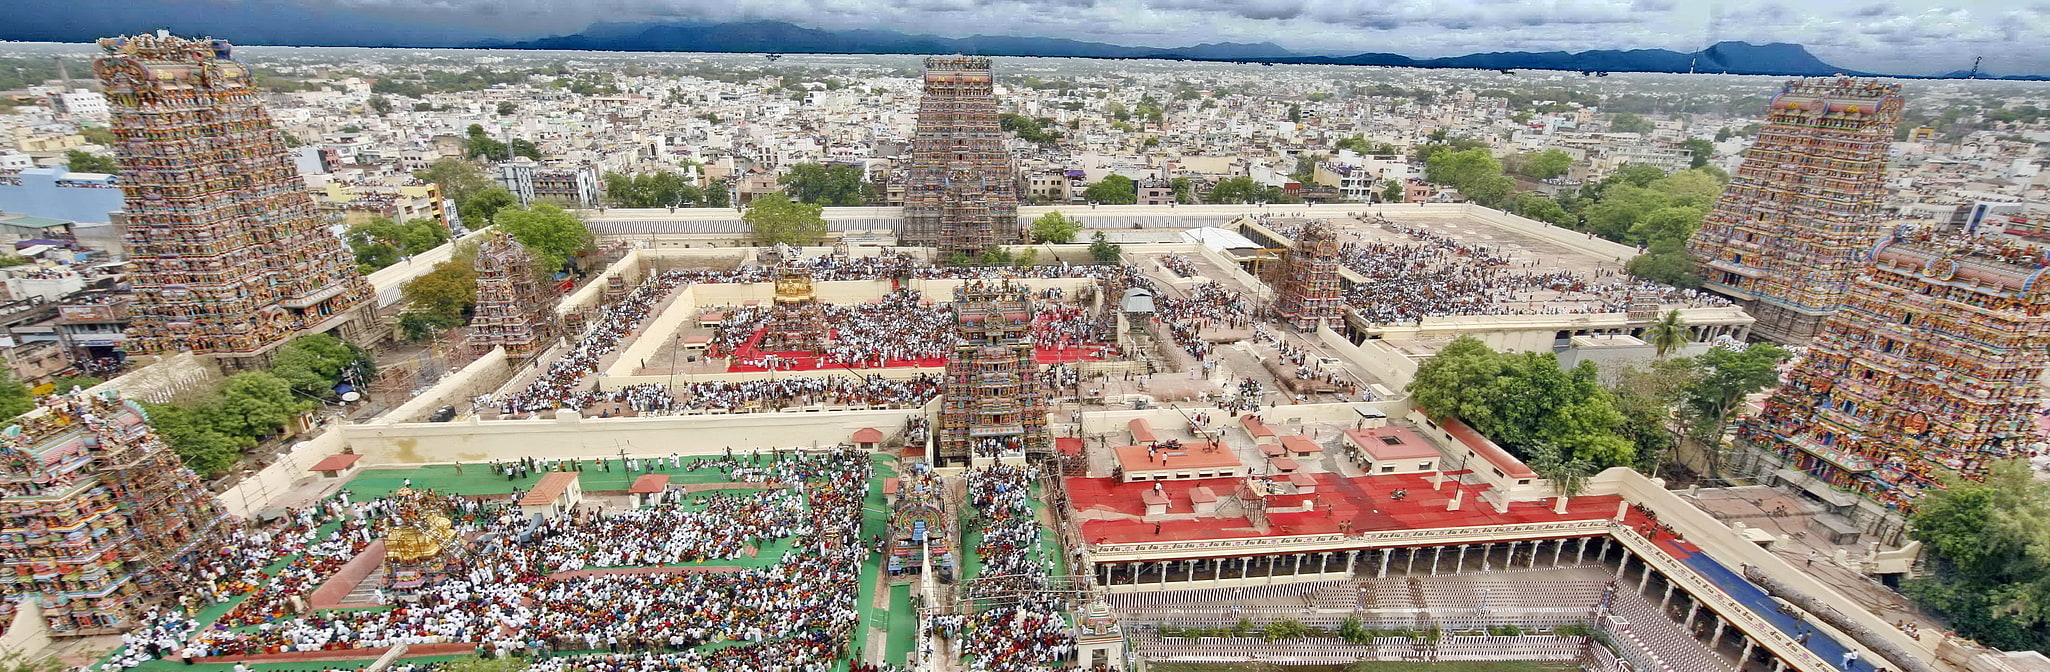 Madurai, India